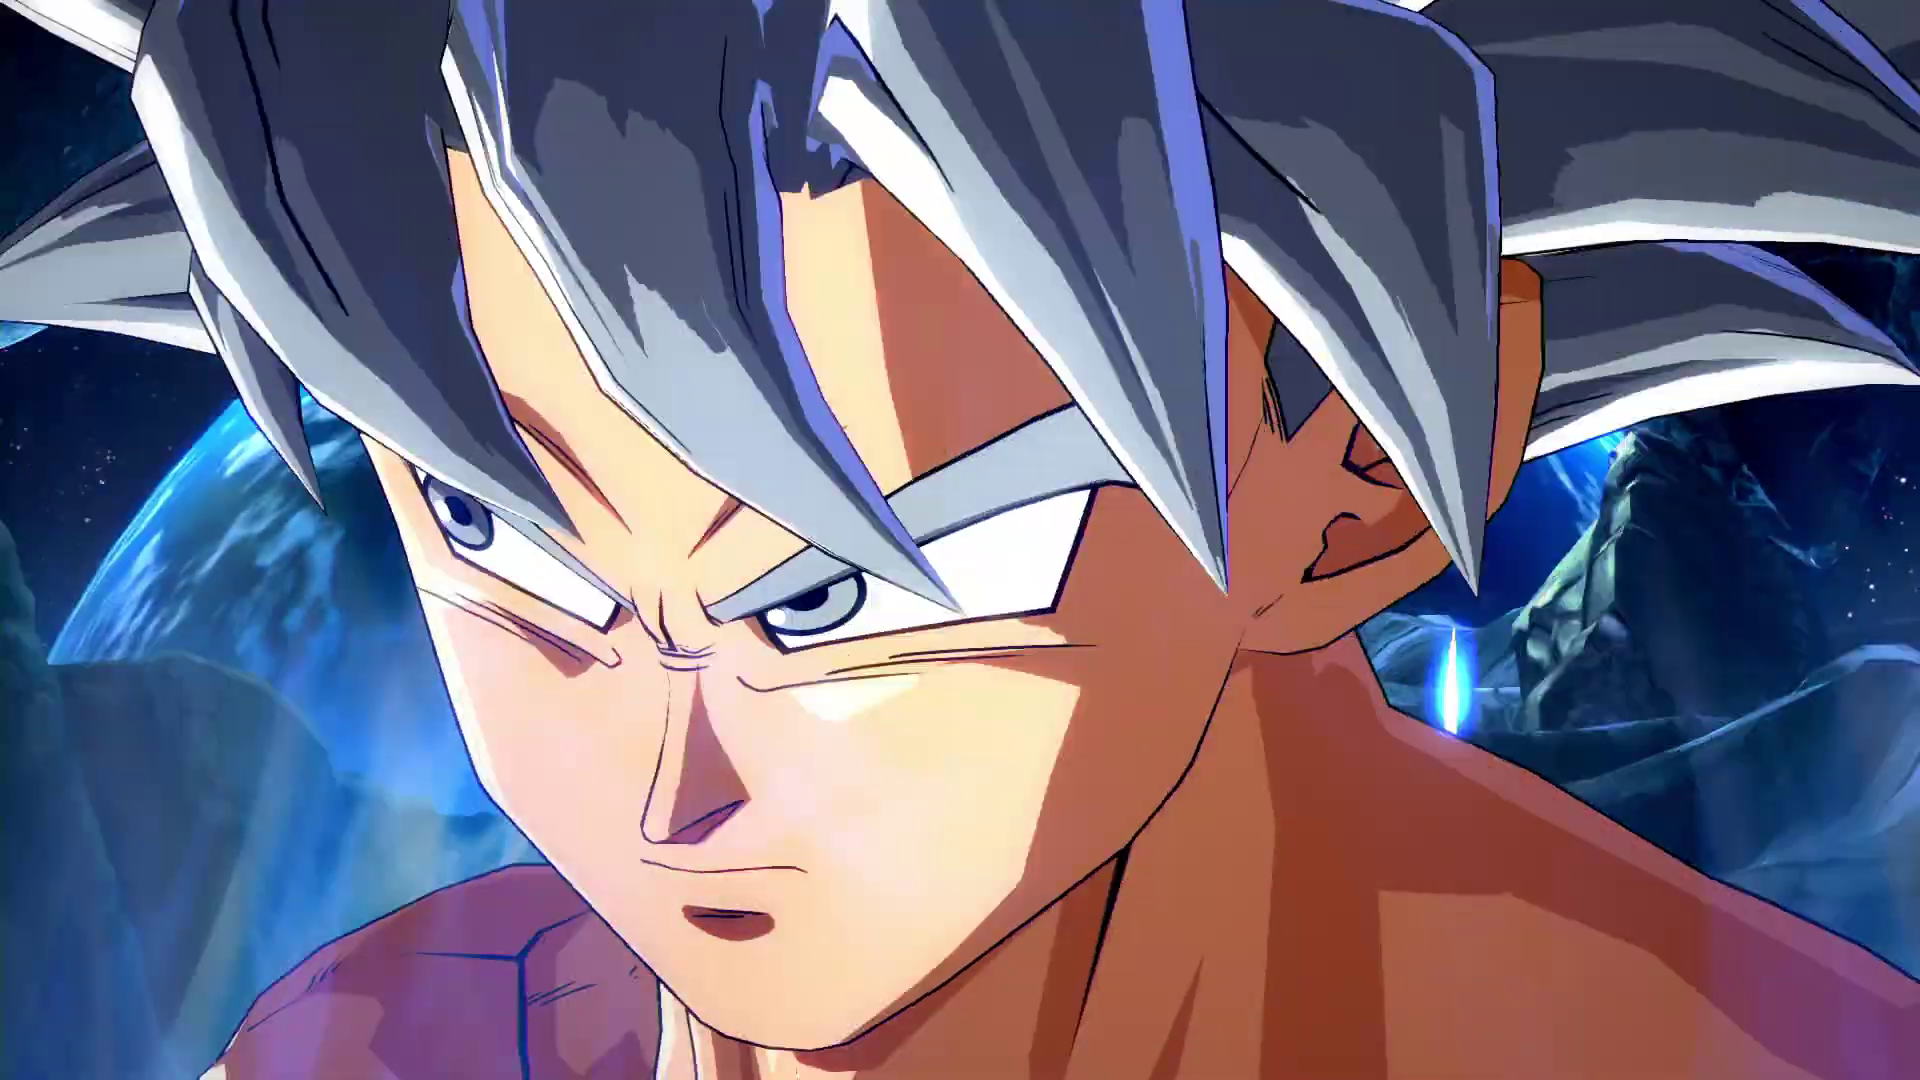 Espectacular tráiler de Goku Ultra Instinto en Dragon Ball FighterZ | Anime  y Manga noticias online [Mision Tokyo]